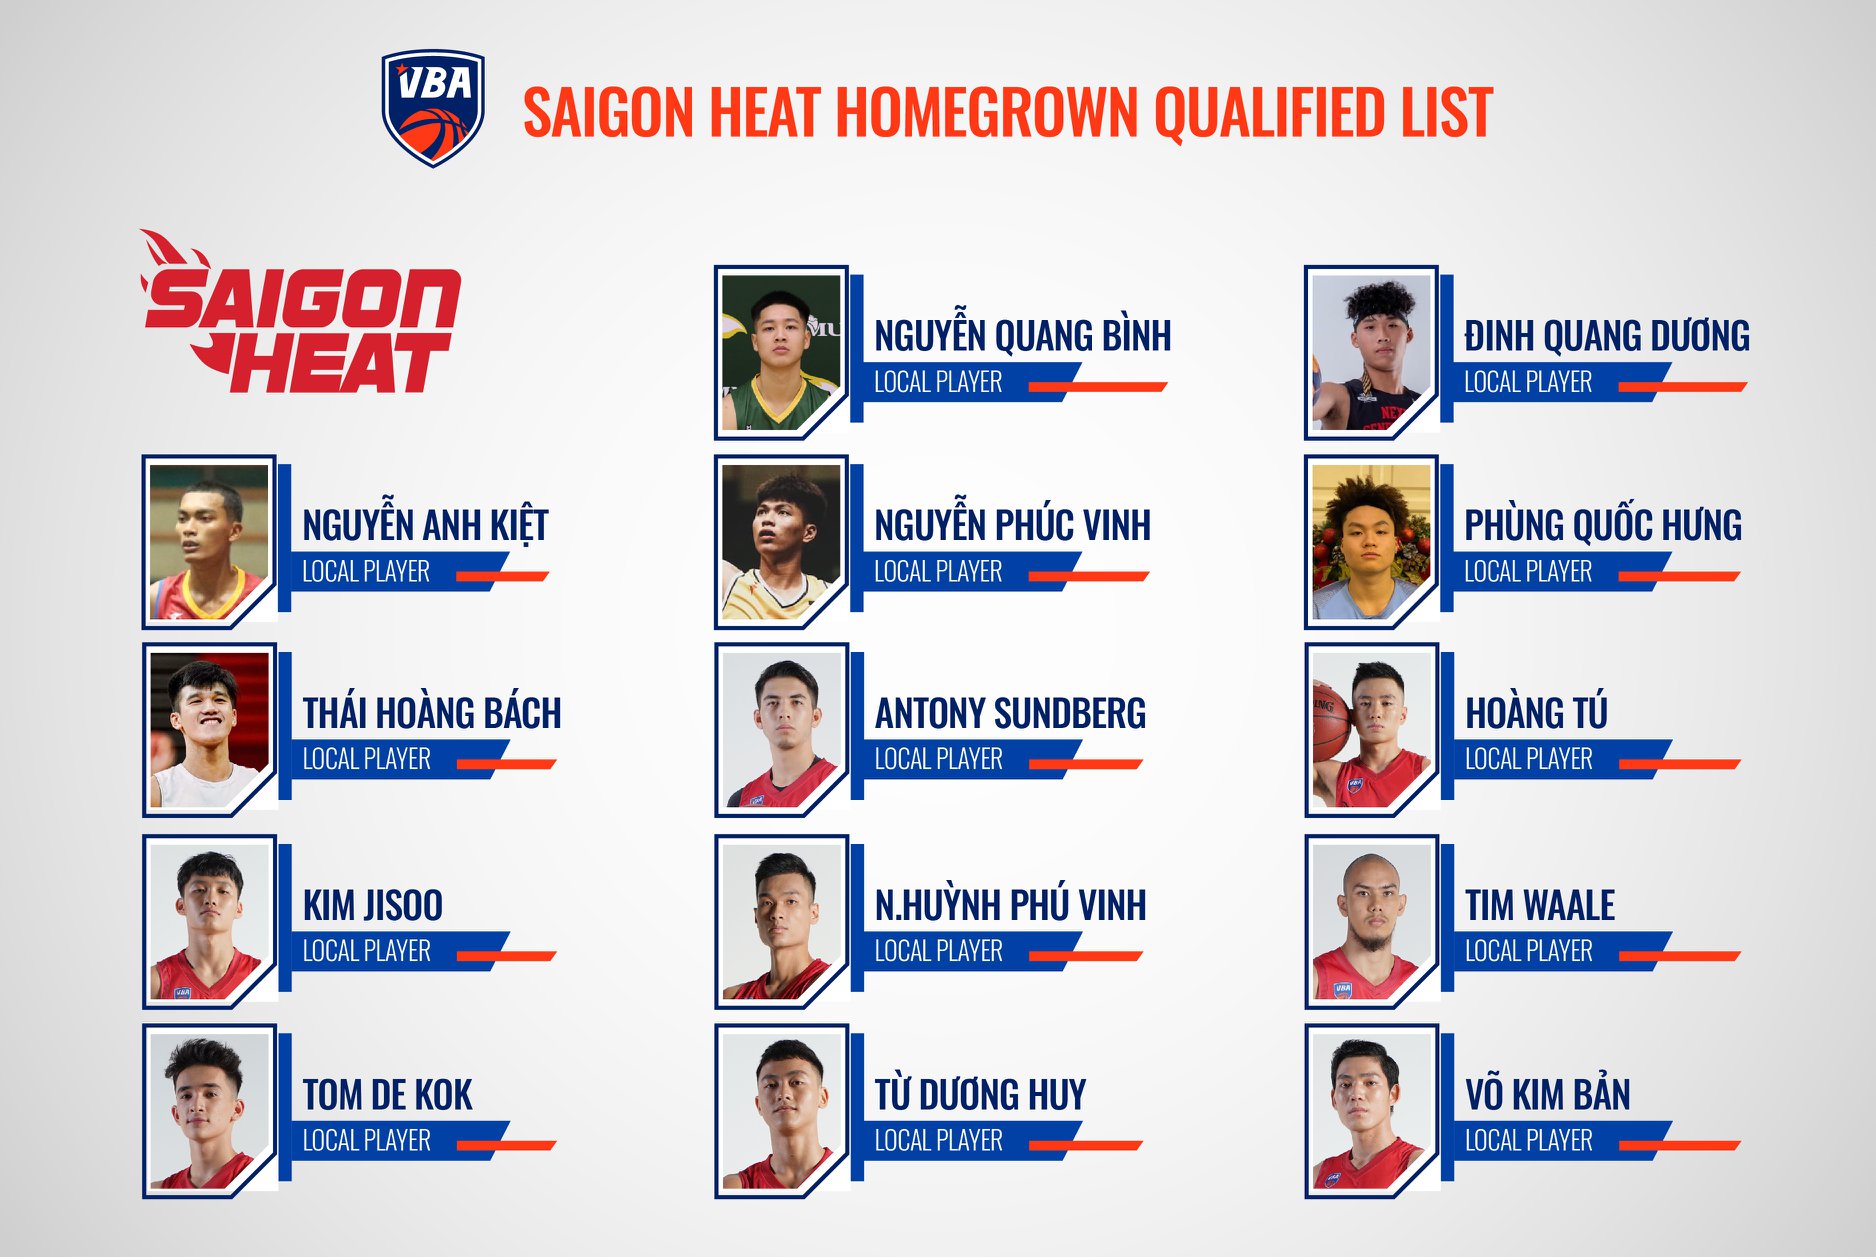 Danh sách cầu thủ Homegrown của Saigon Heat tại VBA 2021: Bất ngờ Báo đen Nguyễn Anh Kiệt - Ảnh 3